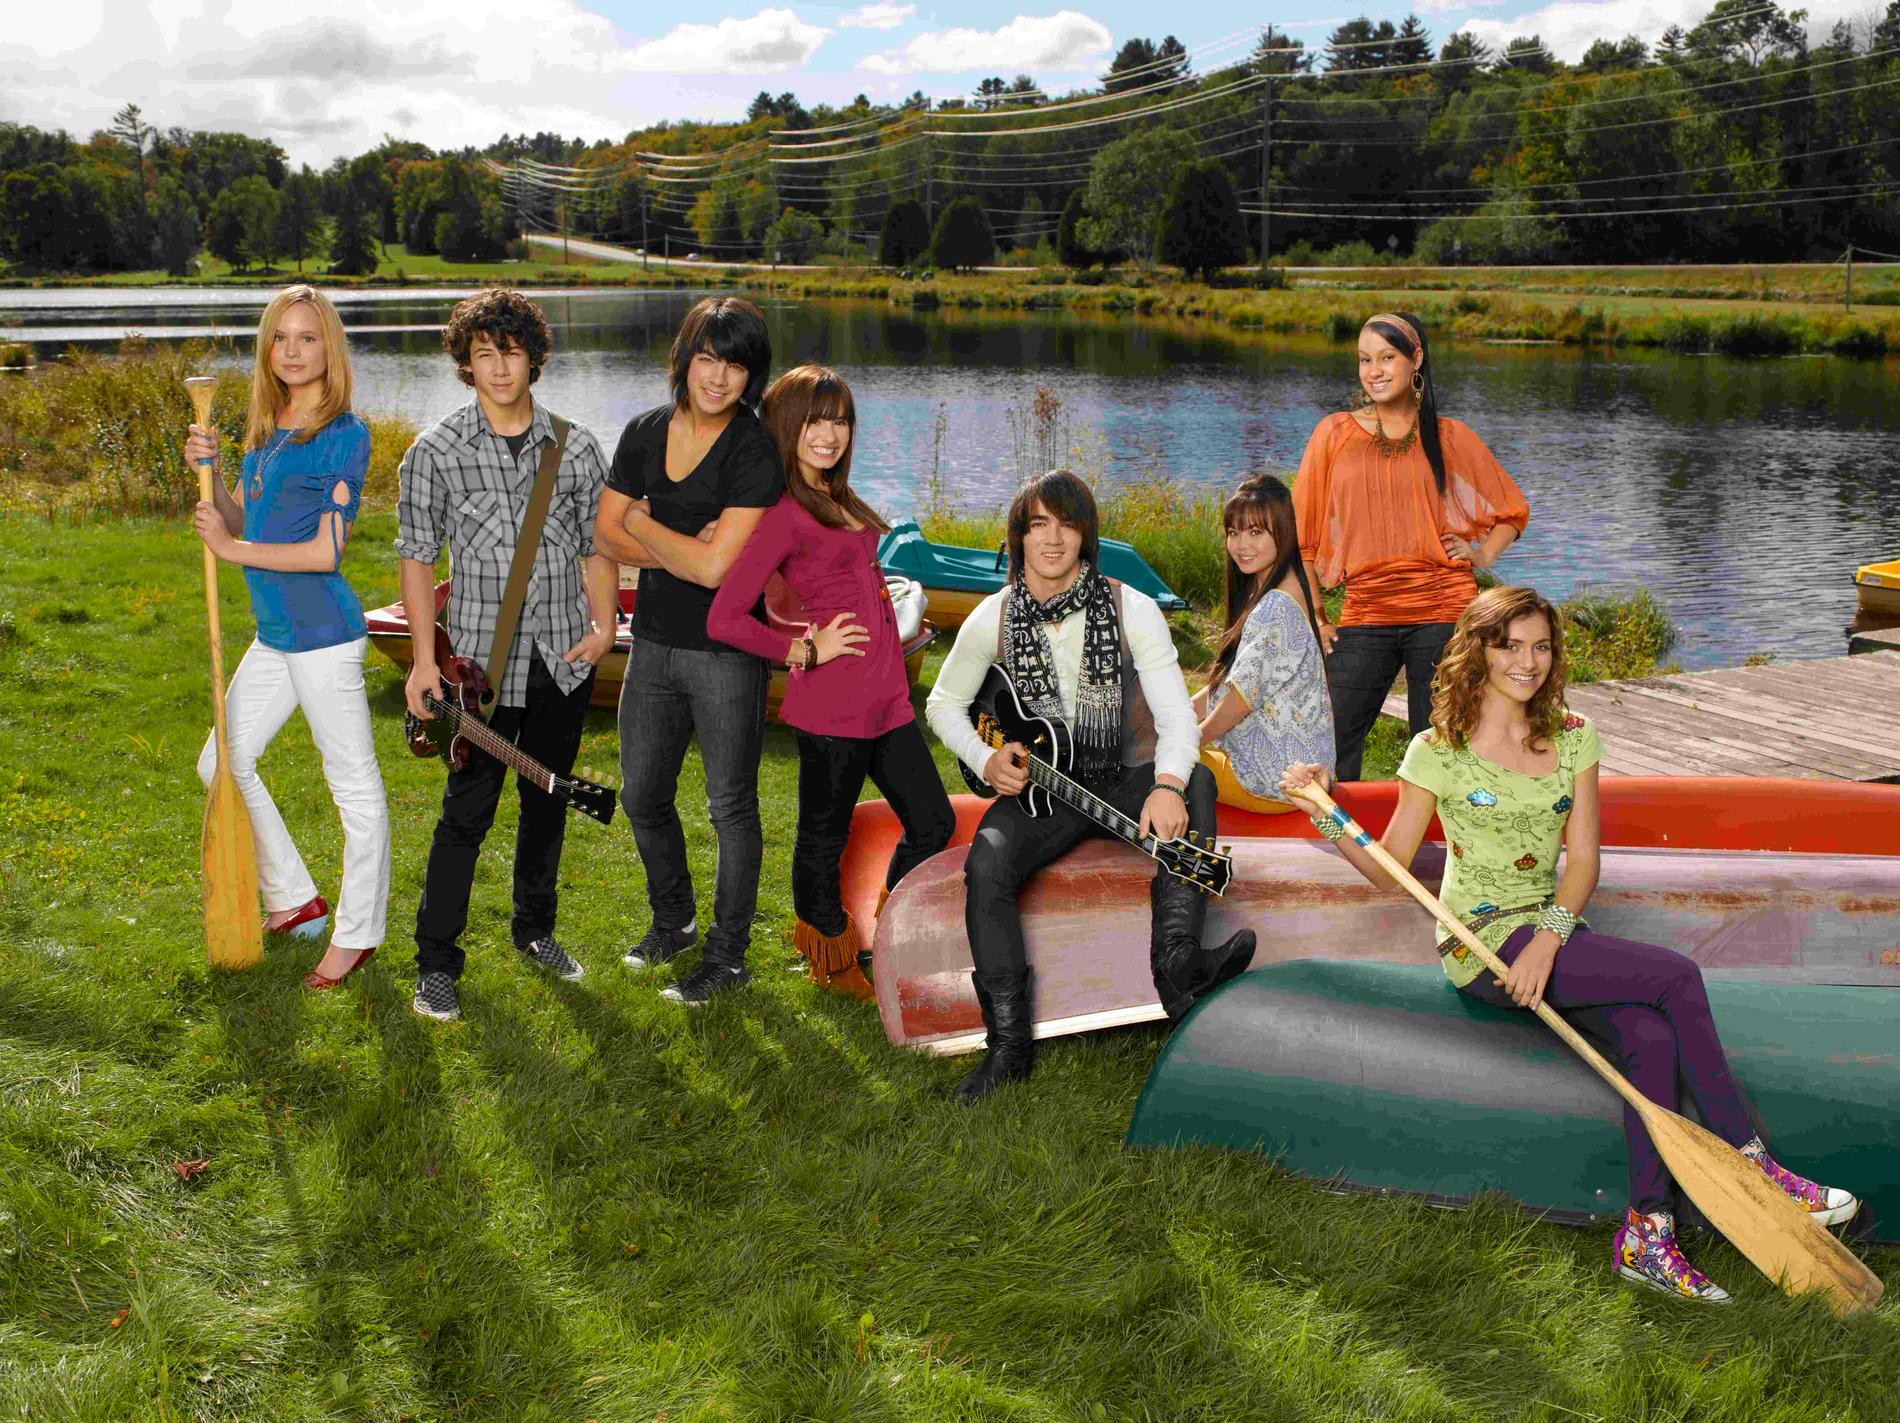 Barnskådespelarna i filmen ”Camp rock”. Alyson Stoner längst till höger.